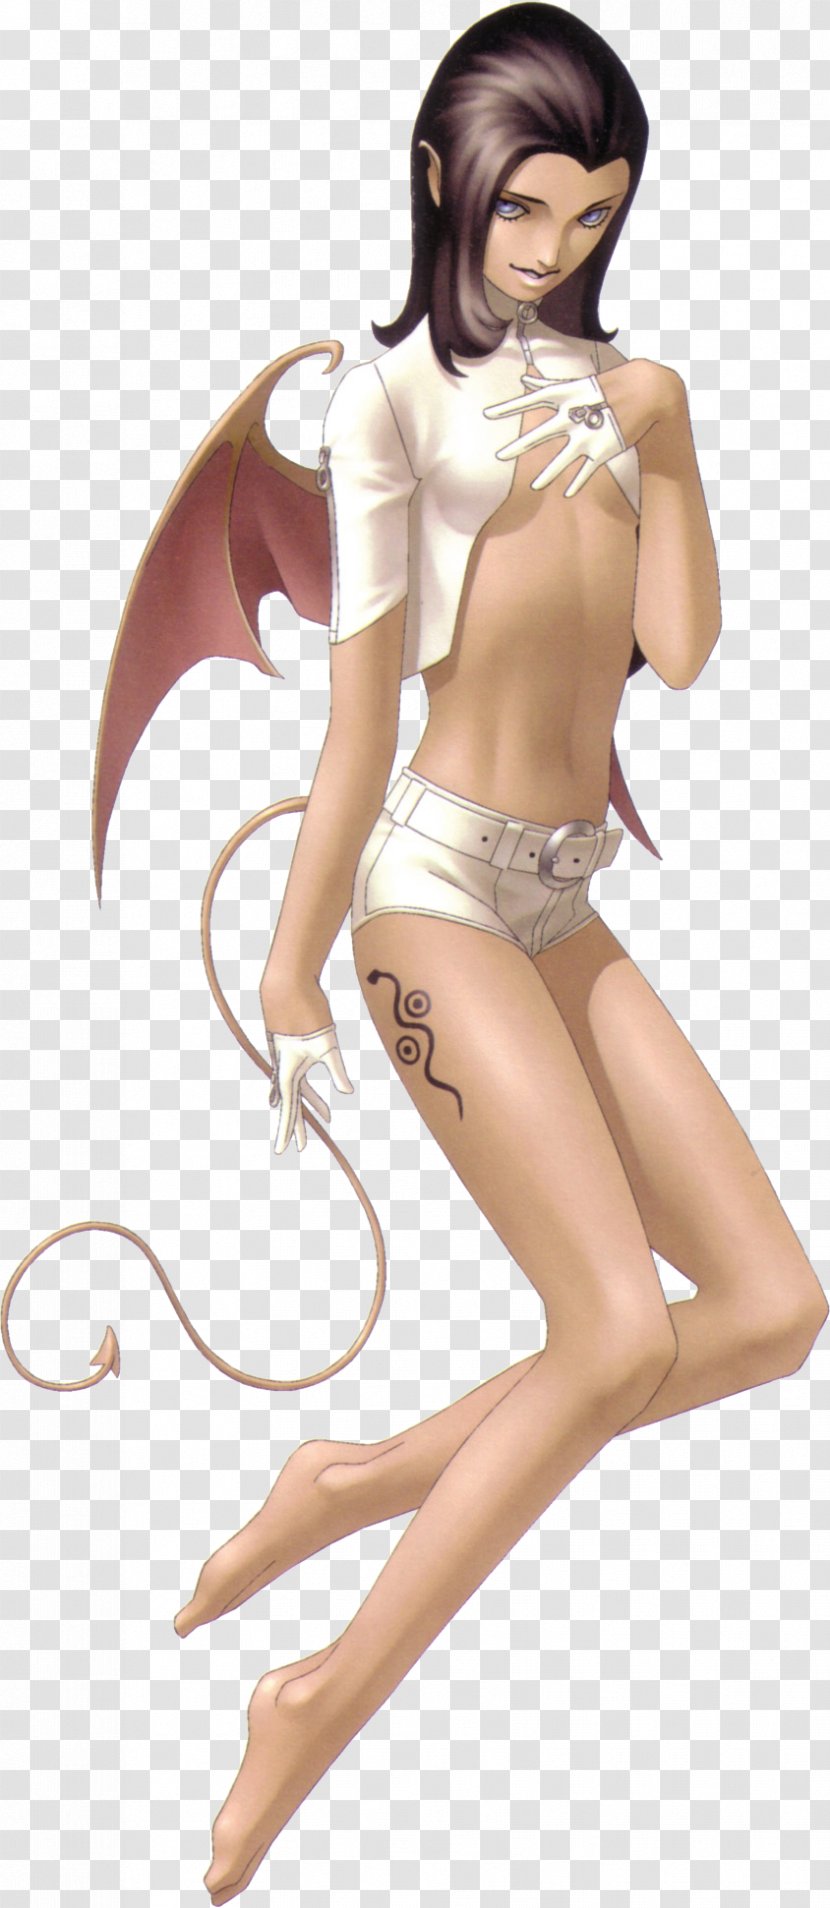 Shin Megami Tensei: Persona 4 2: Innocent Sin 3 5 - Silhouette - Demon Transparent PNG